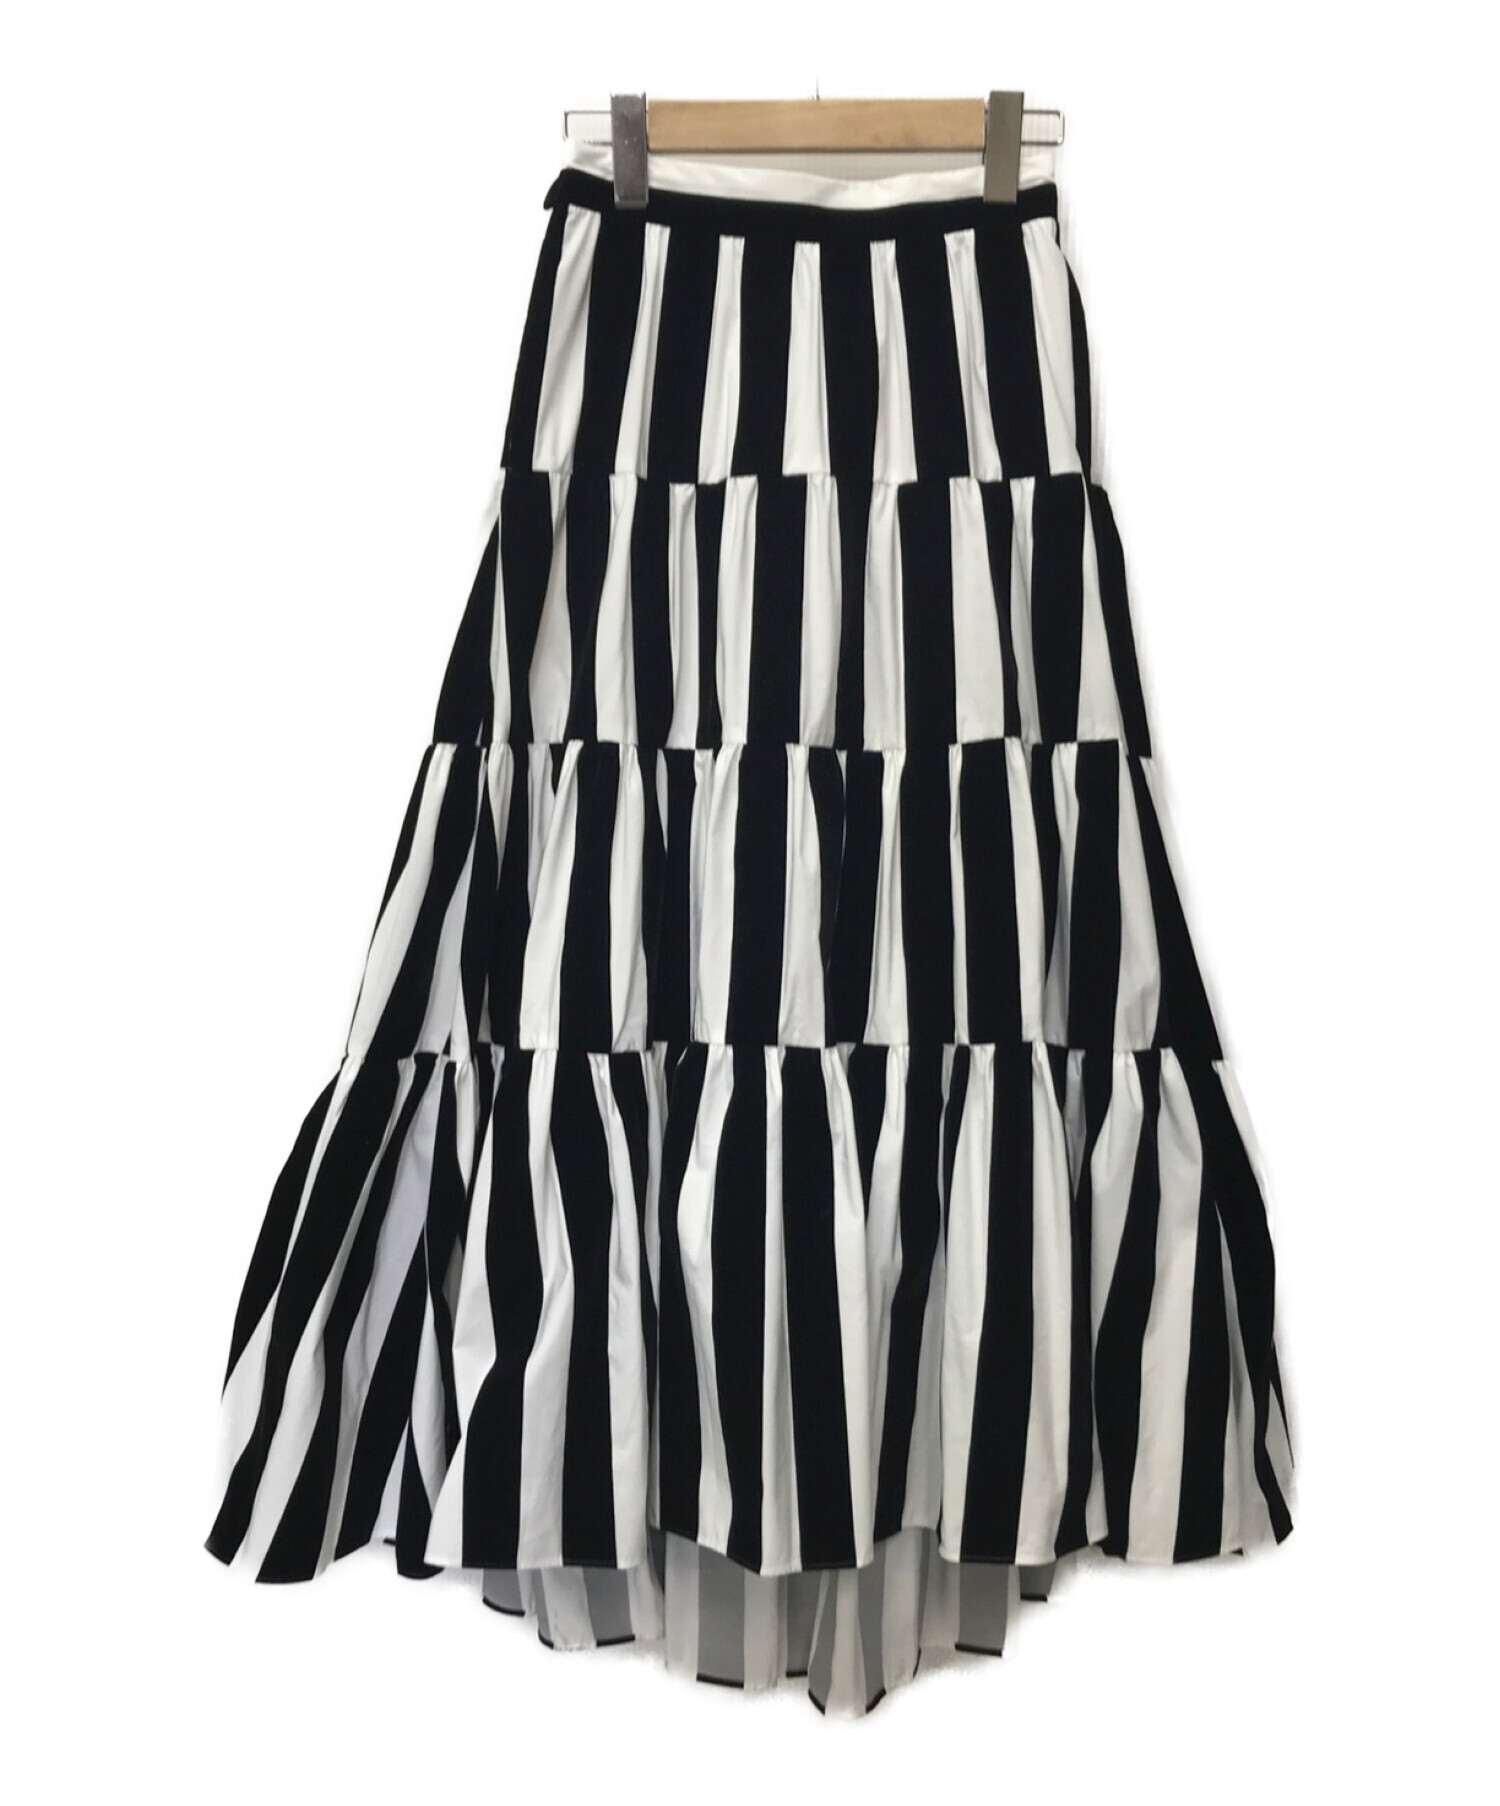 SHE TOKYO (シートーキョー) lisa stripe ティアードスカート ブラック×ホワイト サイズ:36